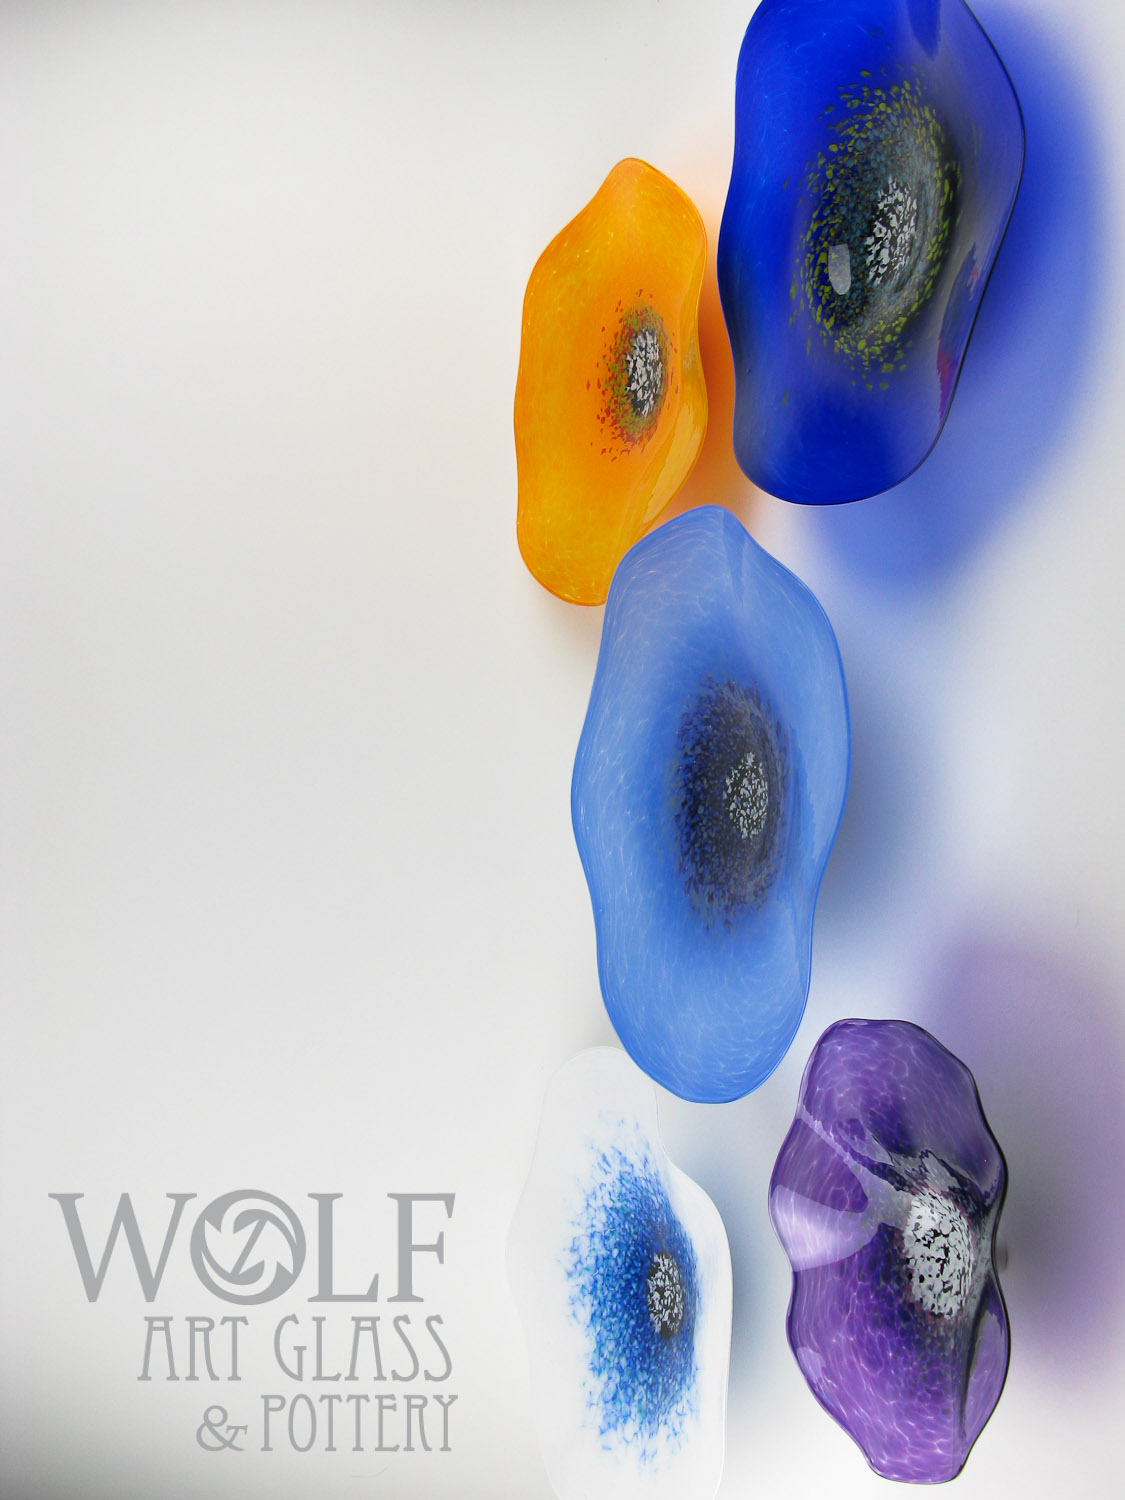 Wolfartglass Collection Ideas 3852 Blown Glass Wall Art And Decor